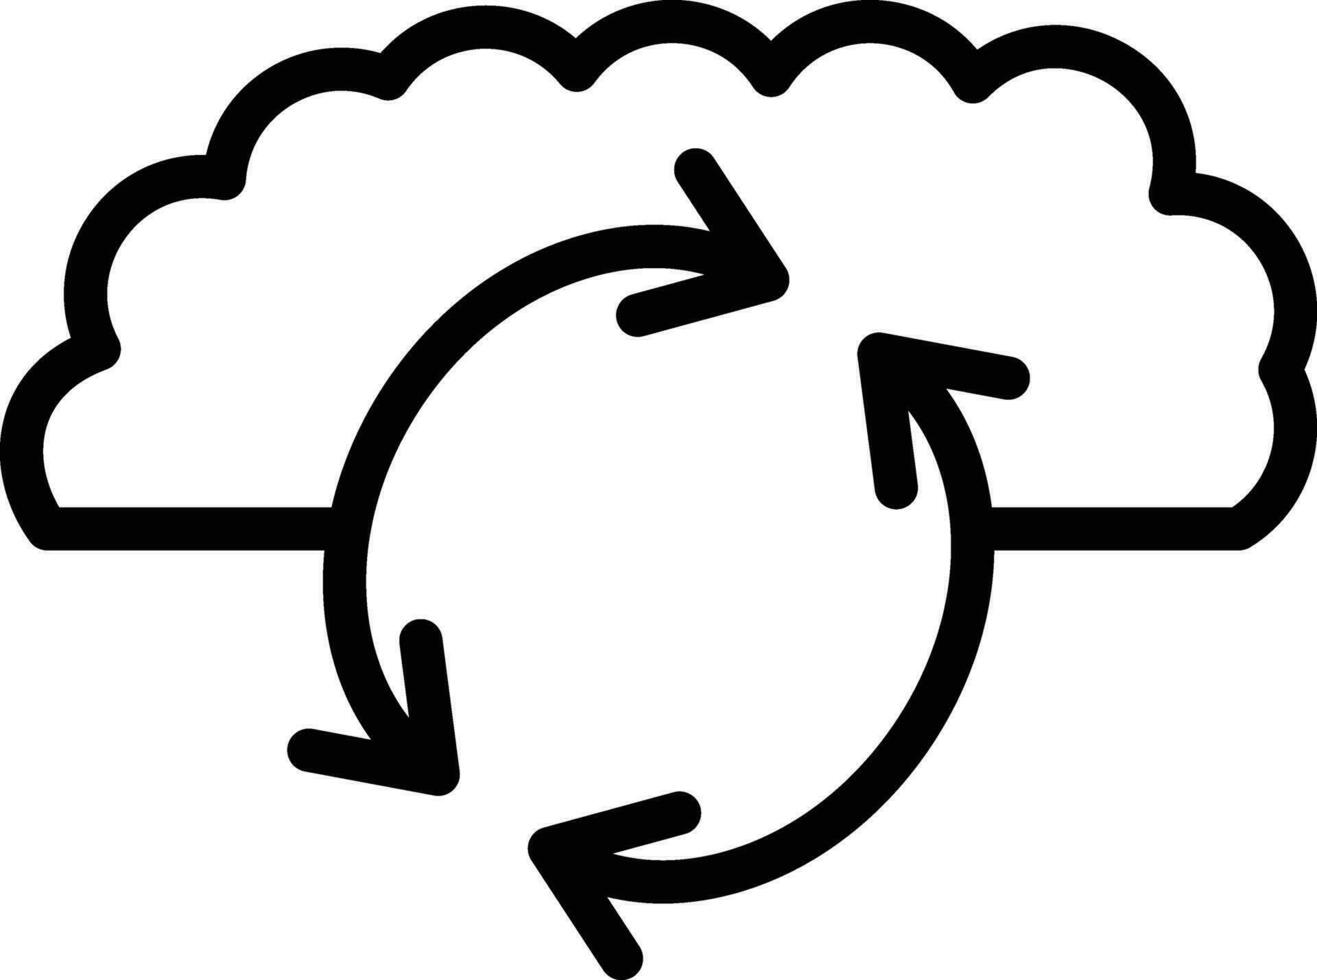 Cloud Sync Vector Icon